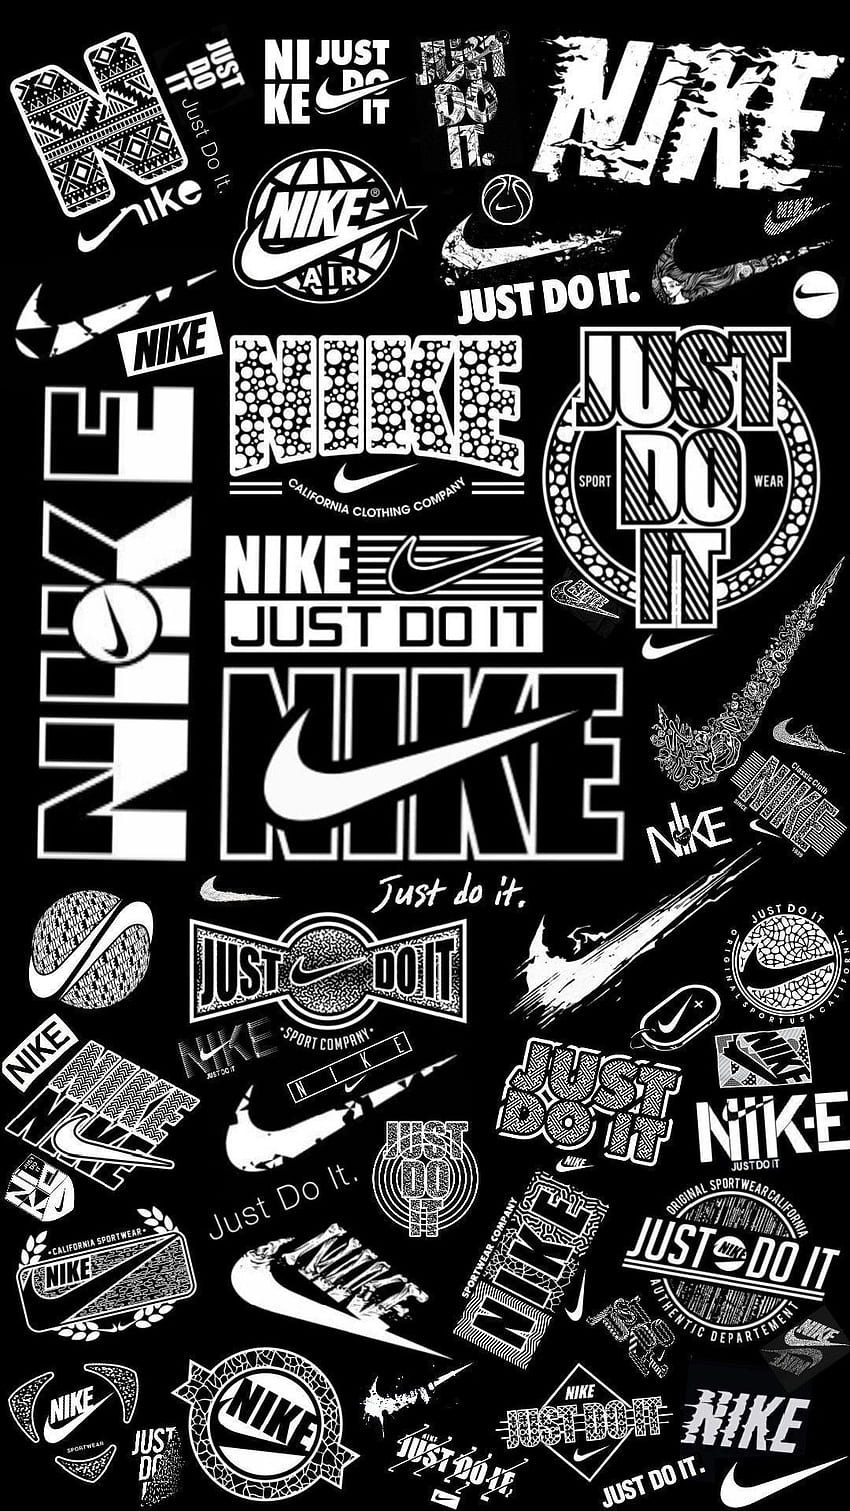 Nike logo HD wallpapers | Pxfuel